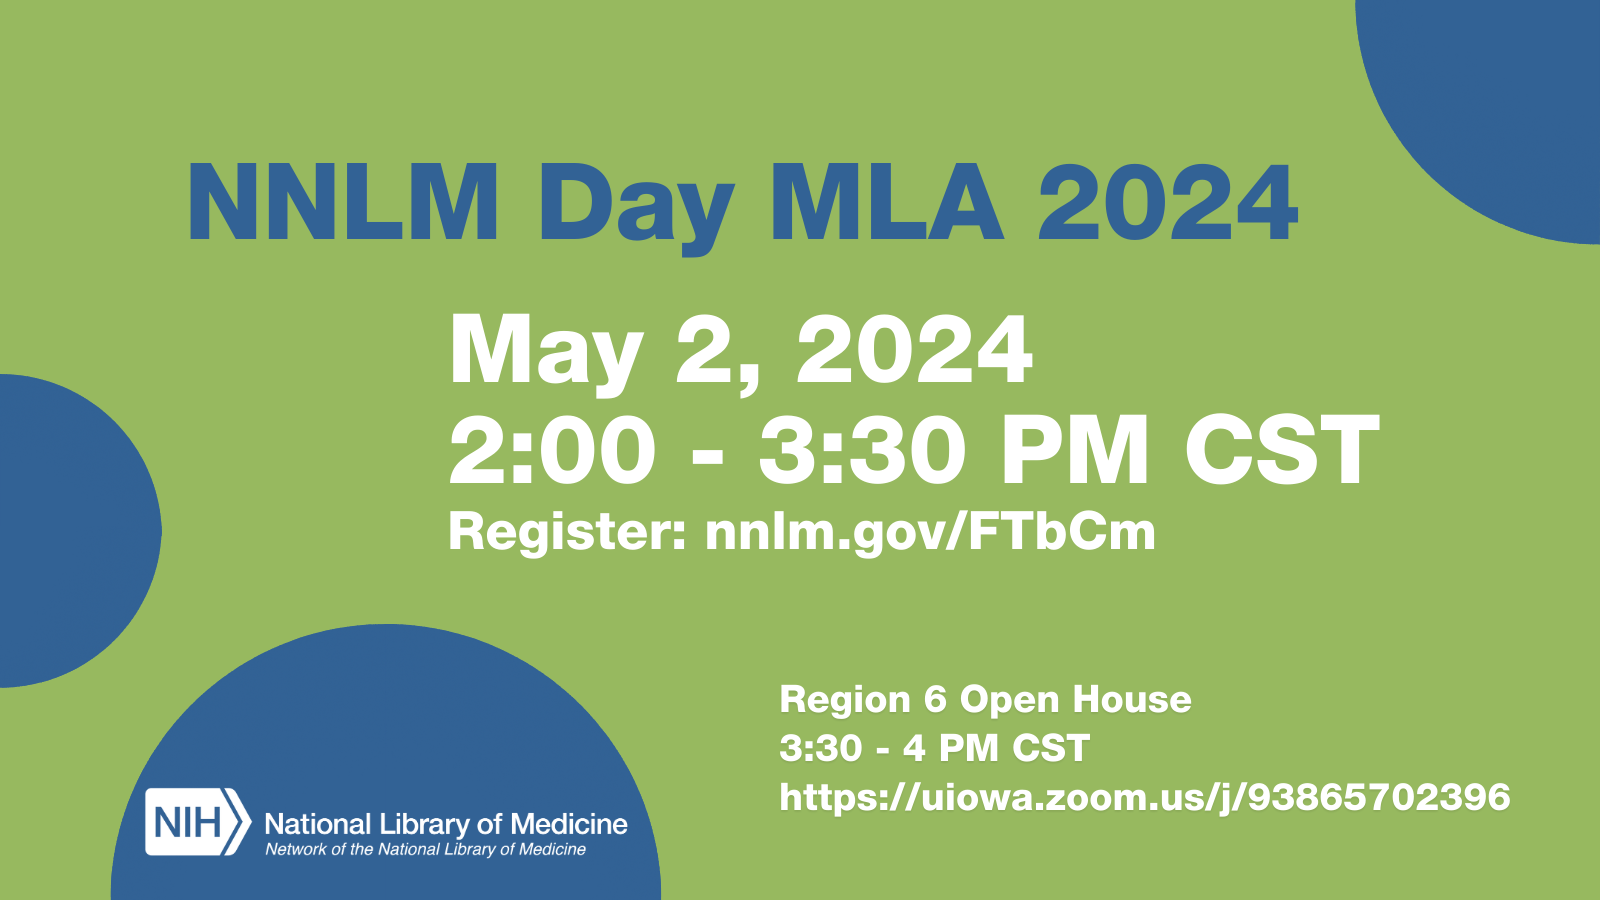 NNLM Day at MLA 2024